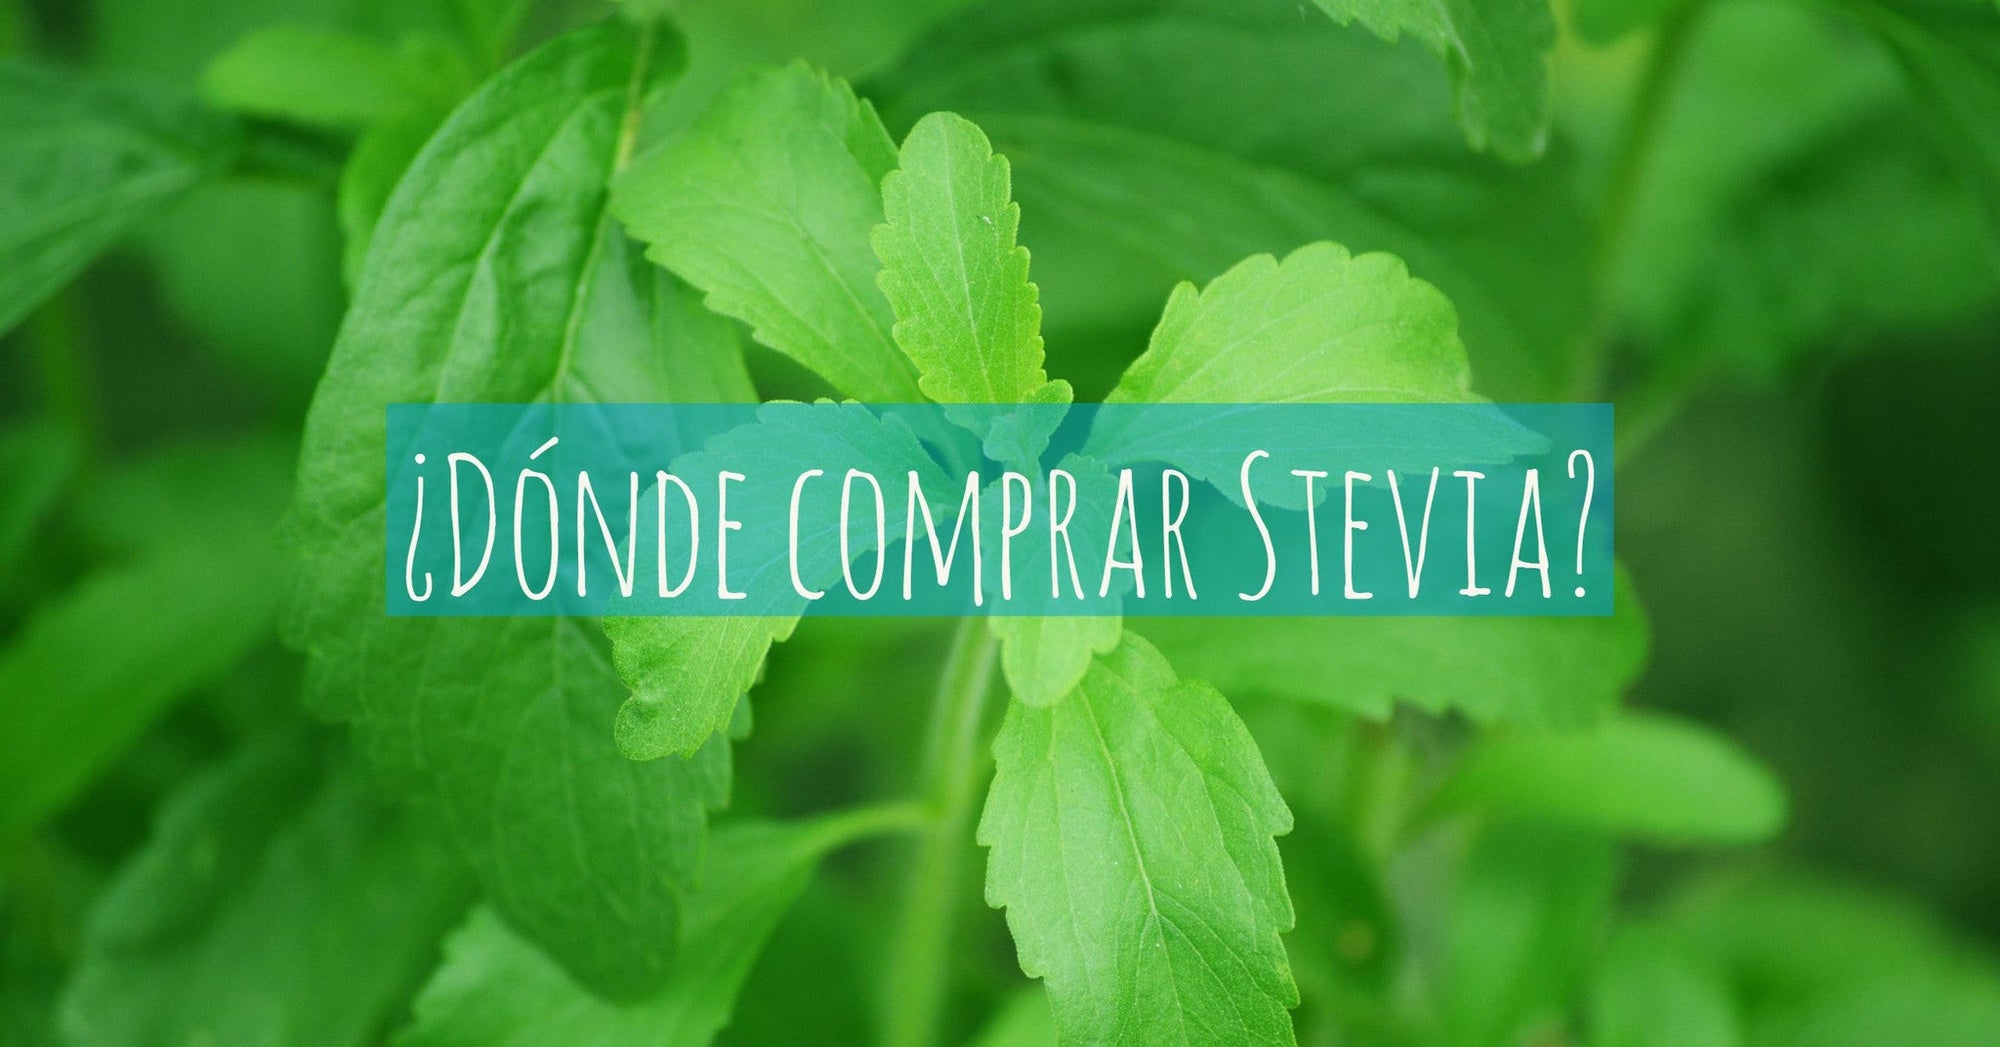 ¿Dónde comprar Stevia?: Conoce la planta Stevia y dónde encontrarla.